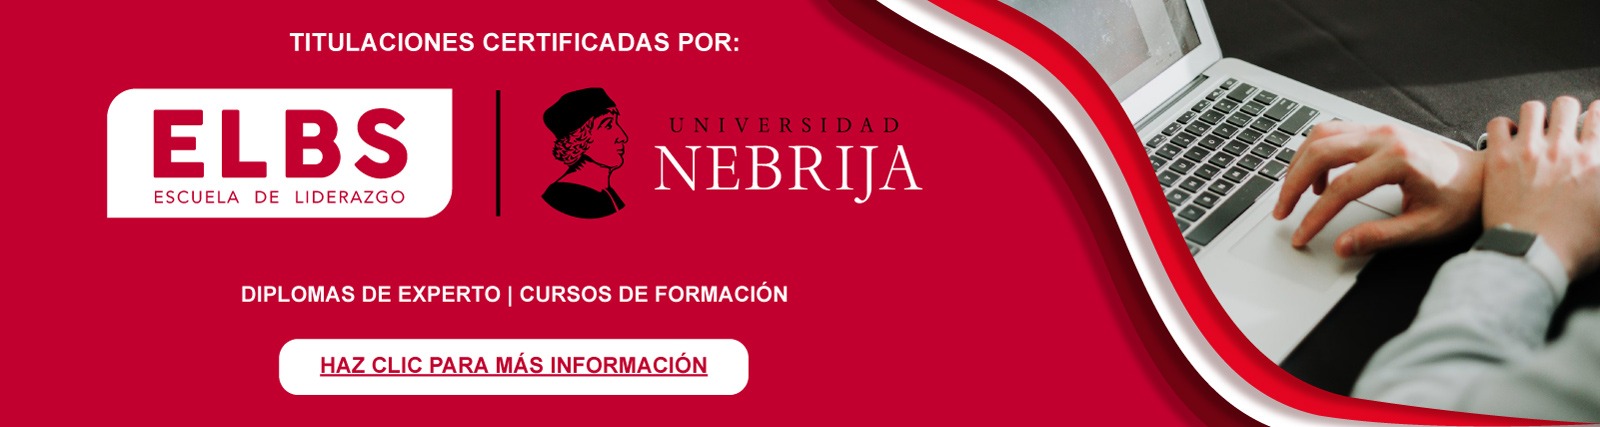 Titulaciones acreditadas por Universidad Nebrija